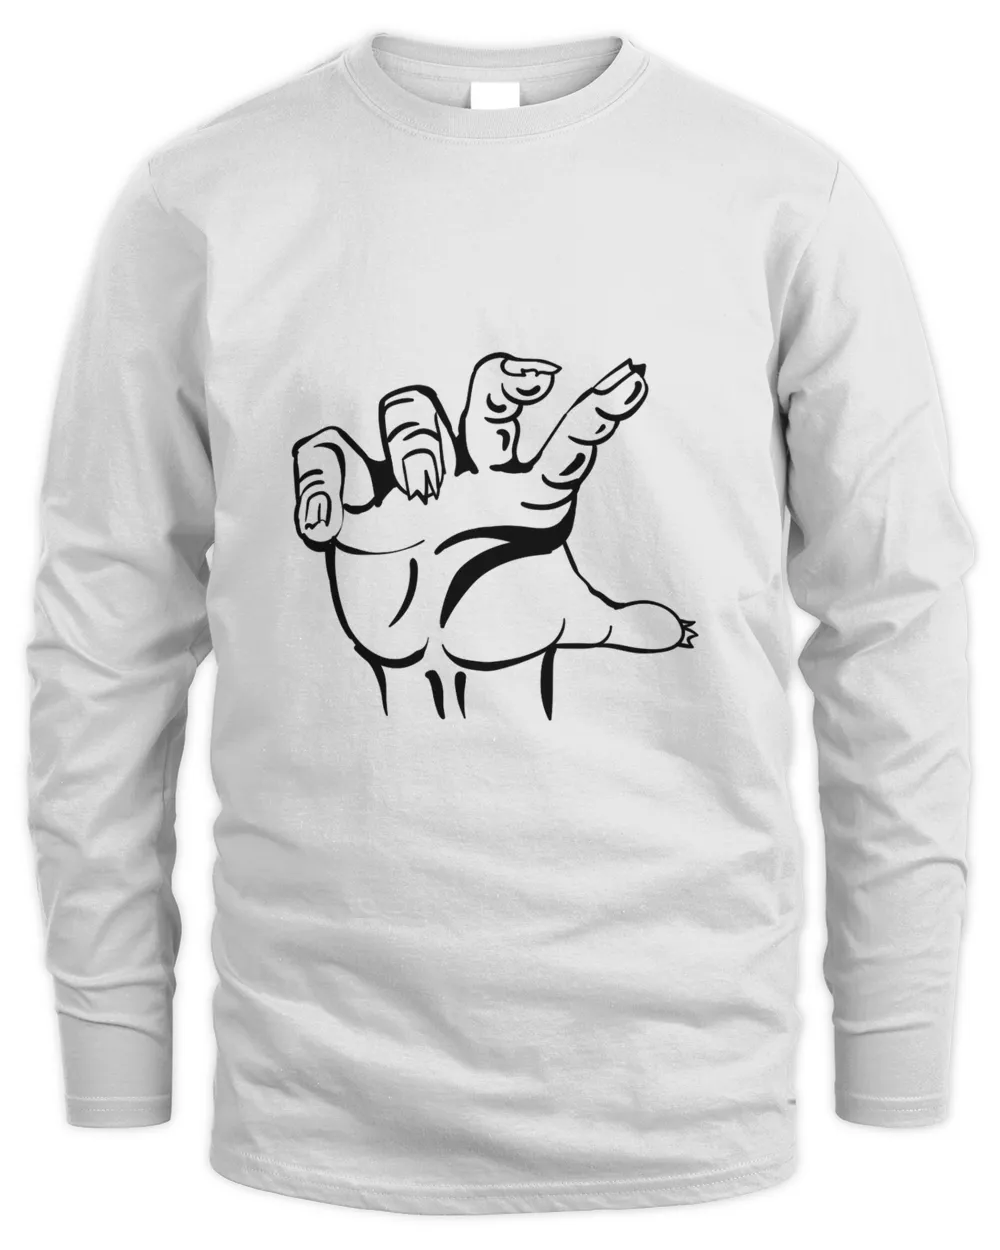 Zombie Hand black t shirt hoodie sweater